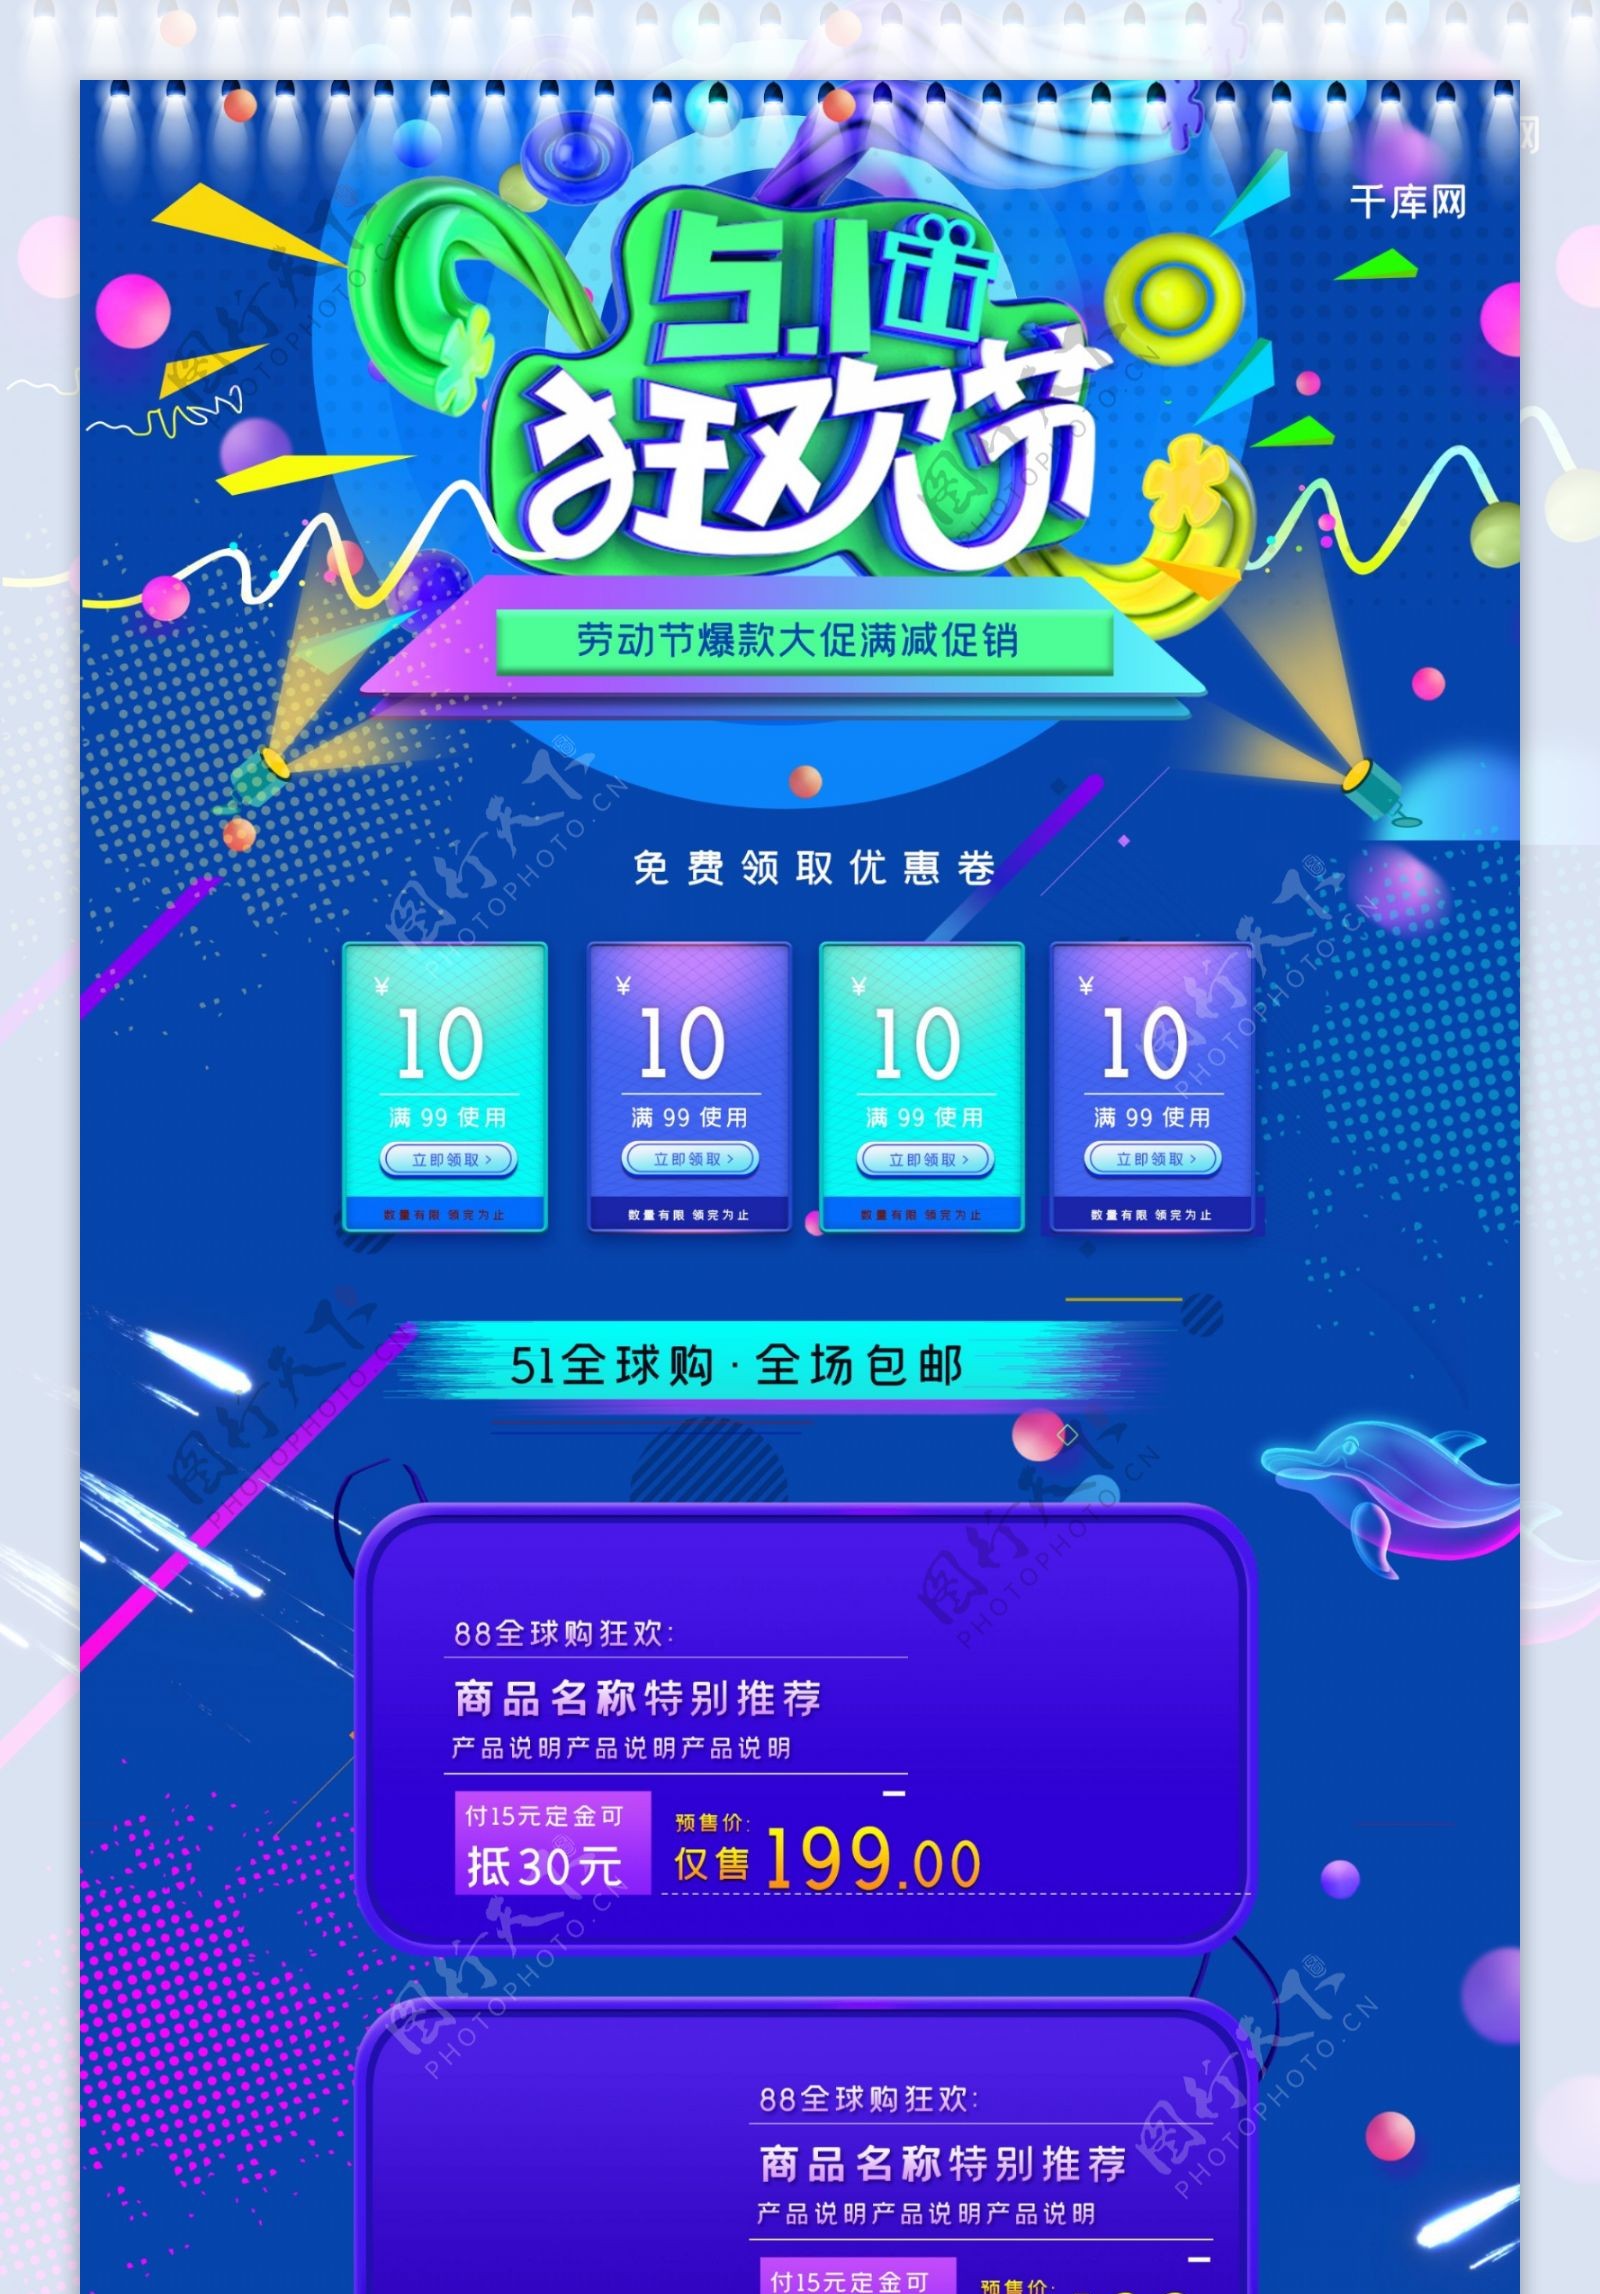 51狂欢节大促C4D炫酷蓝色电商淘宝首页模板